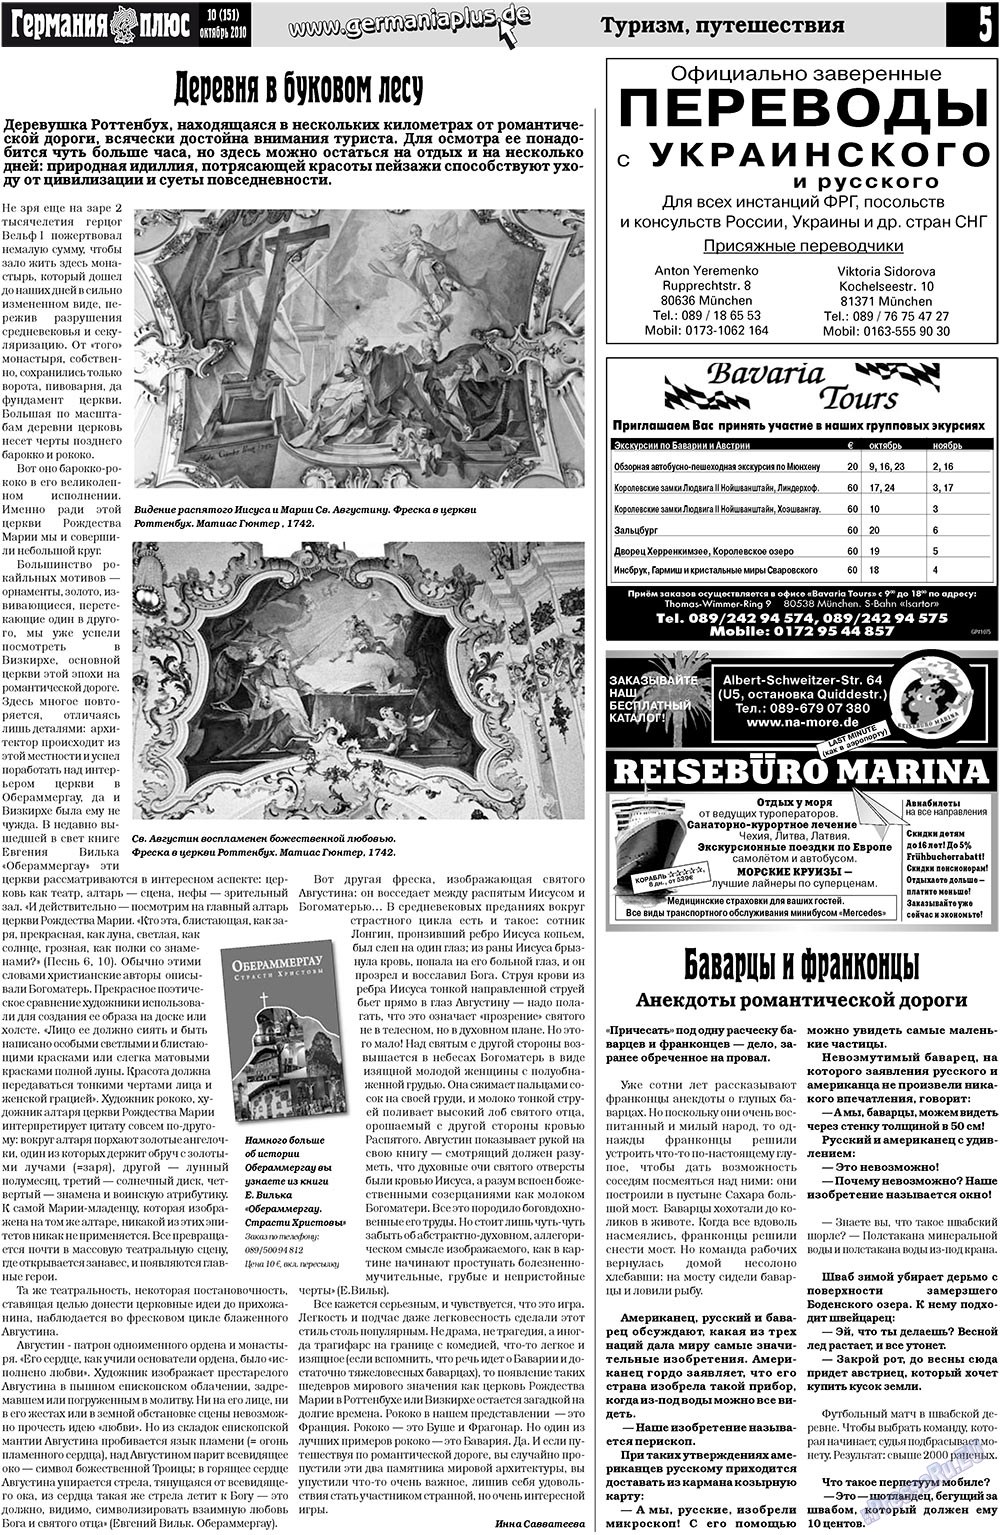 Германия плюс (газета). 2010 год, номер 10, стр. 5